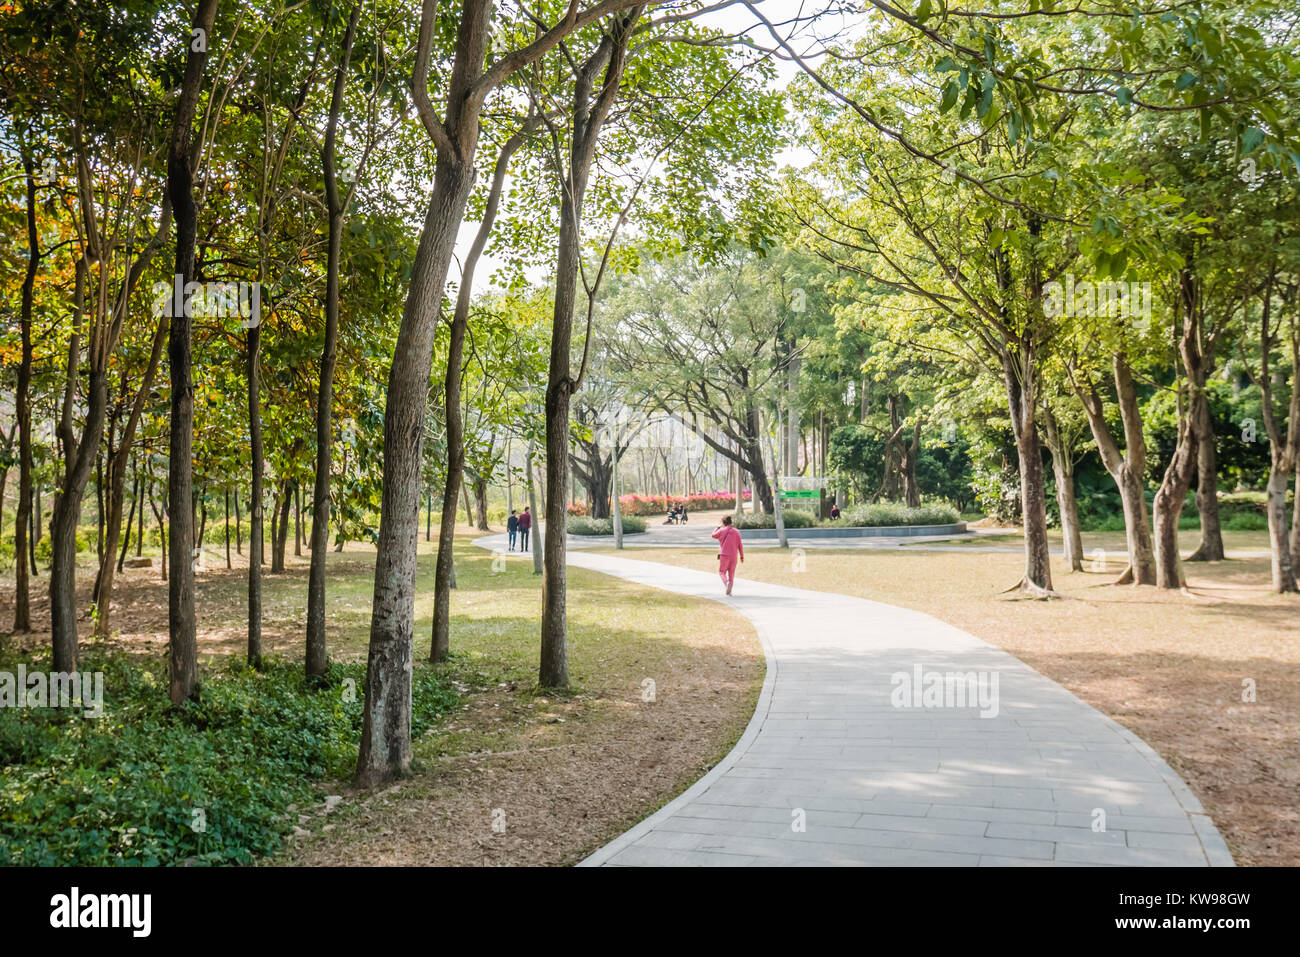 Shenzhen Lianhuashan Park Stock Photo